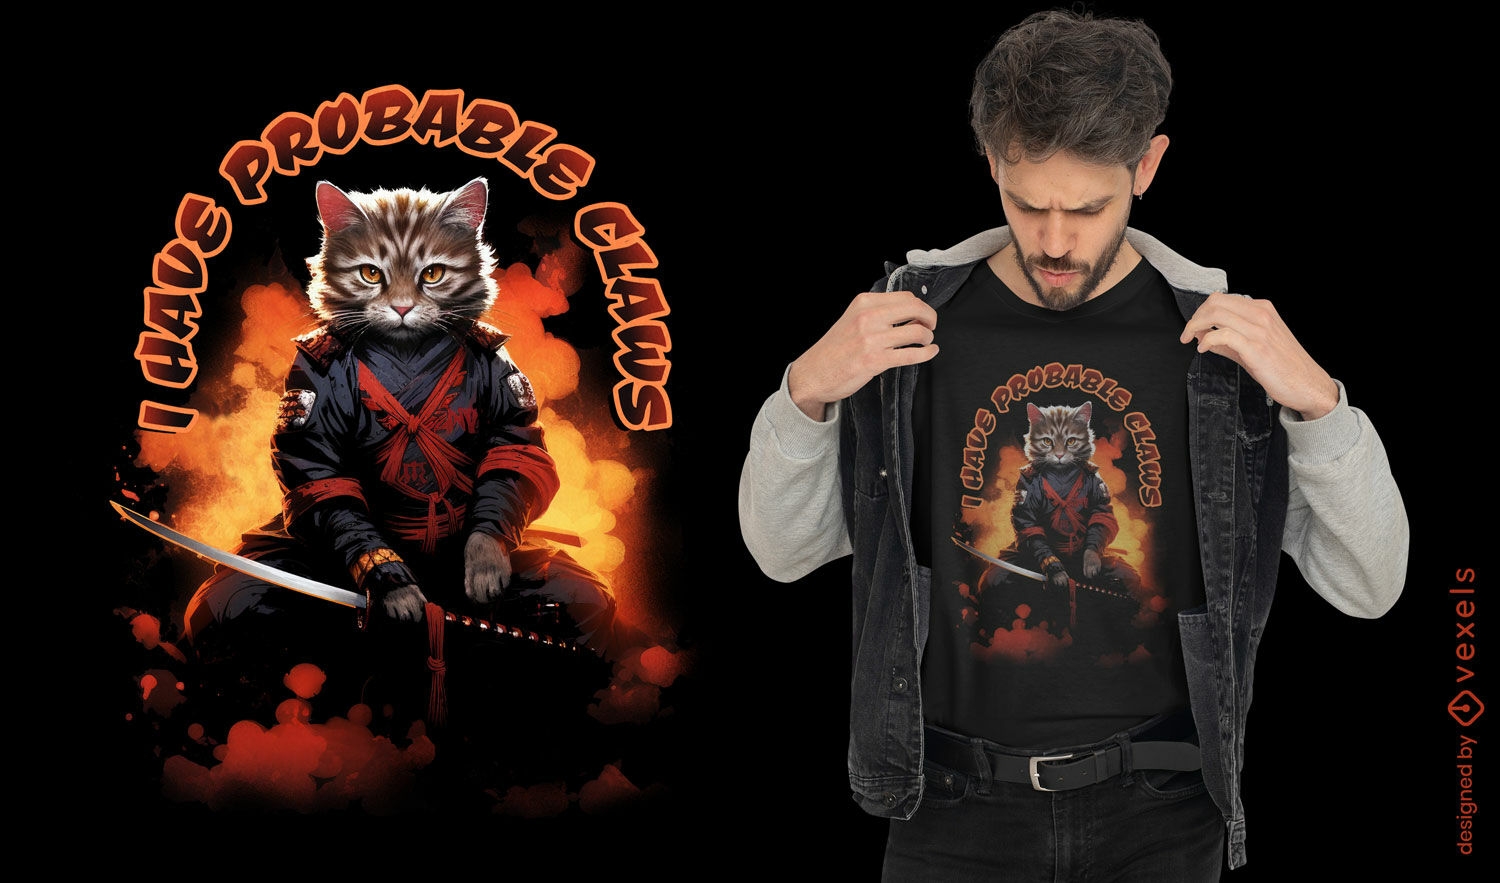 Samurai cat fire t-shirt design